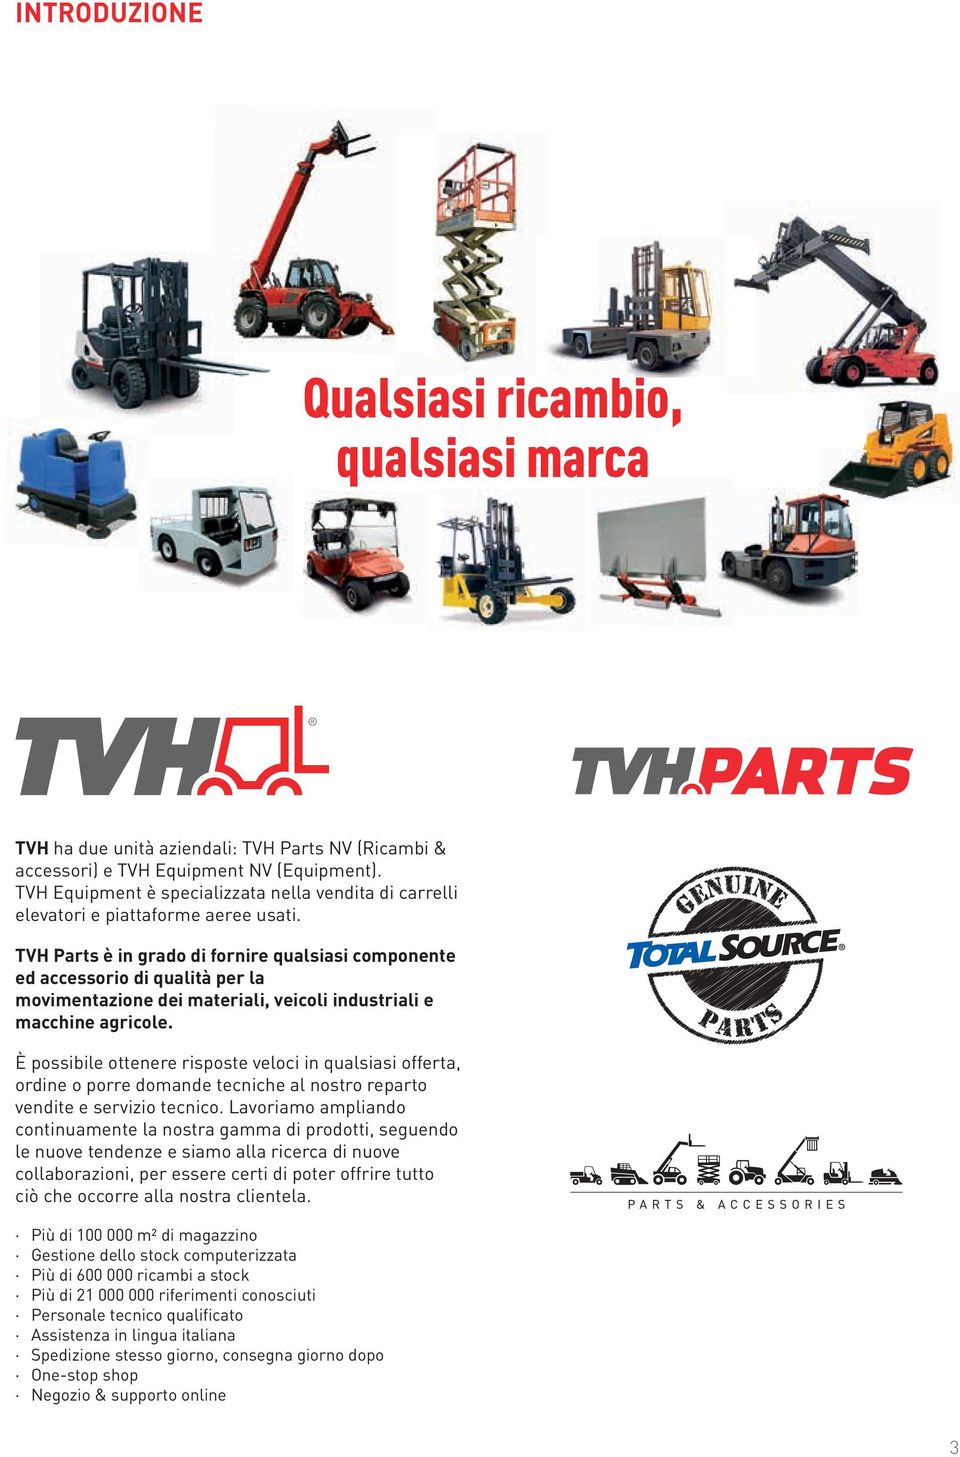 TVH Parts è in grado di fornire qualsiasi componente ed accessorio di qualità per la movimentazione dei materiali, veicoli industriali e macchine agricole.